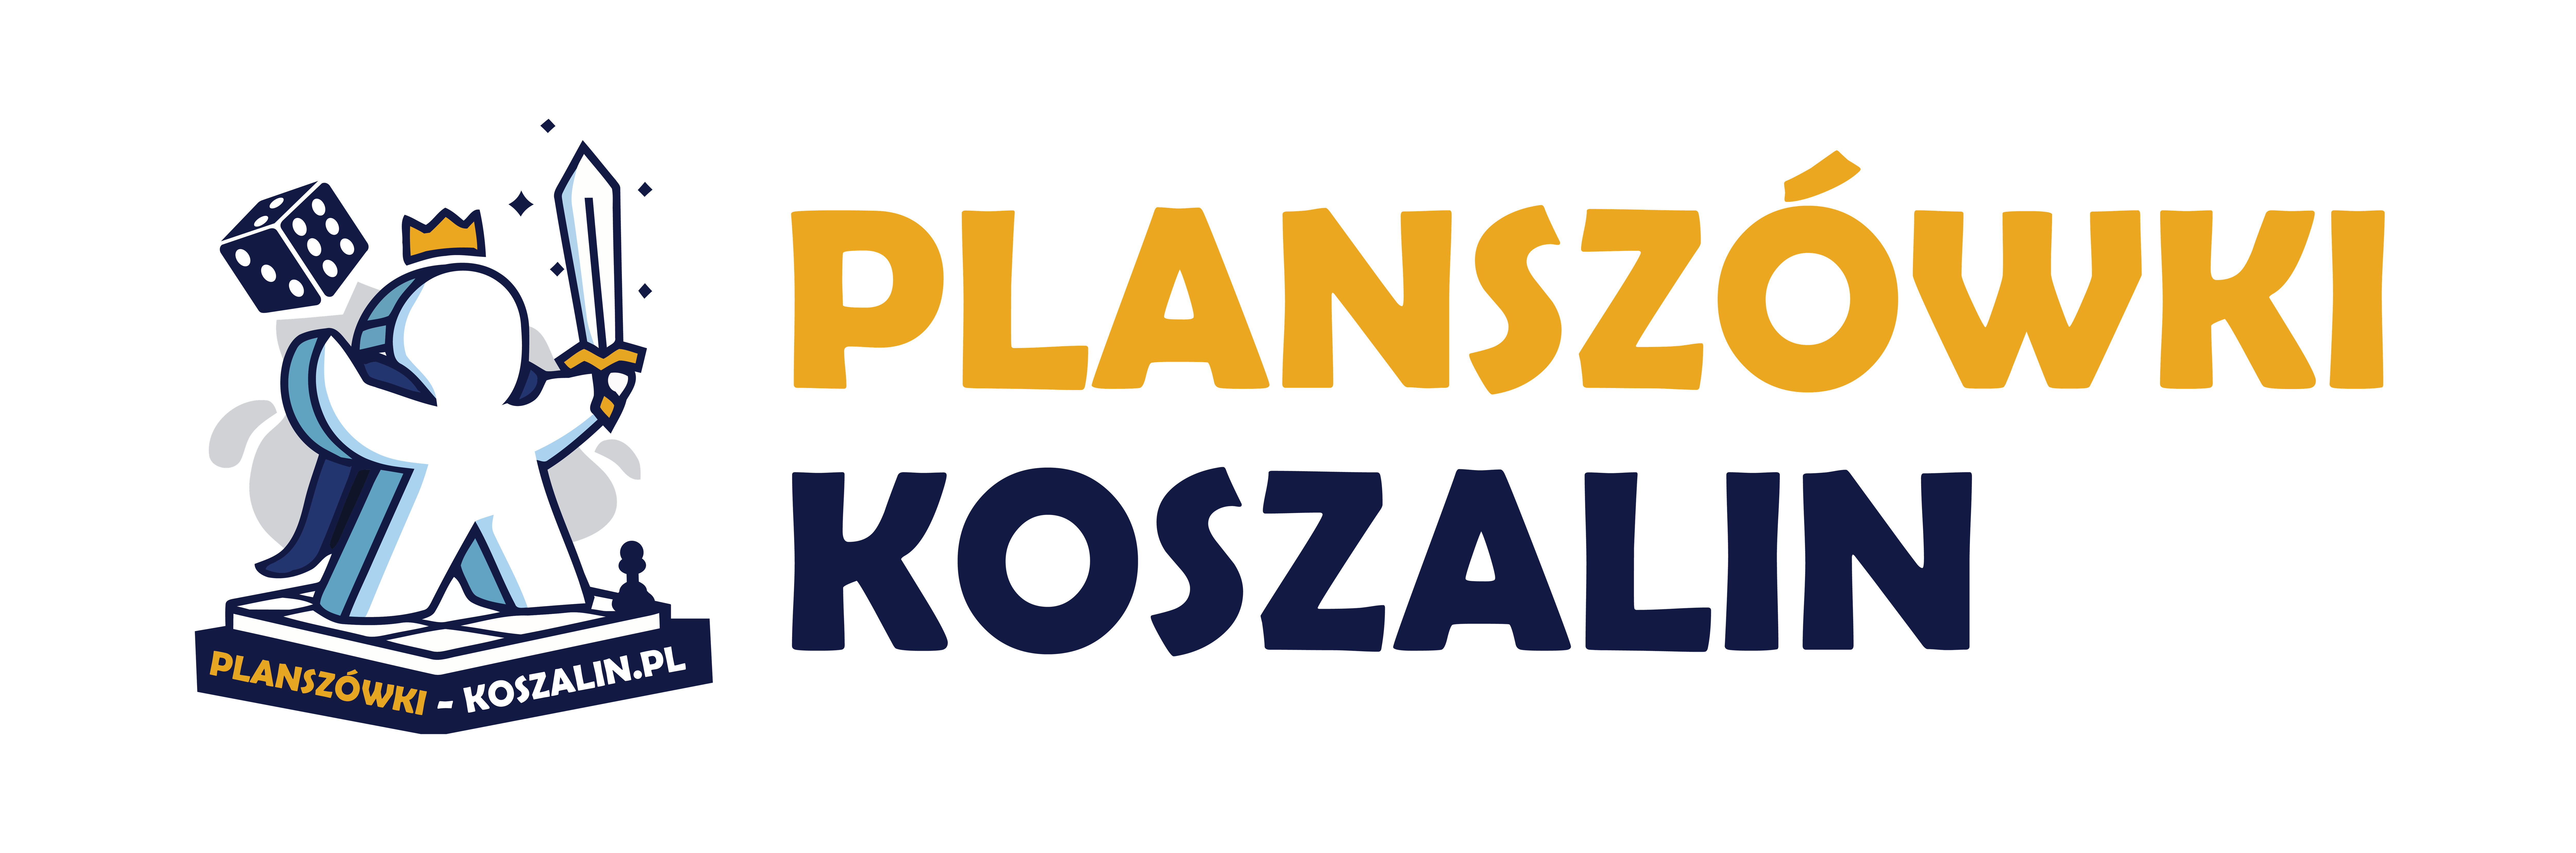 Planszówki Koszalin